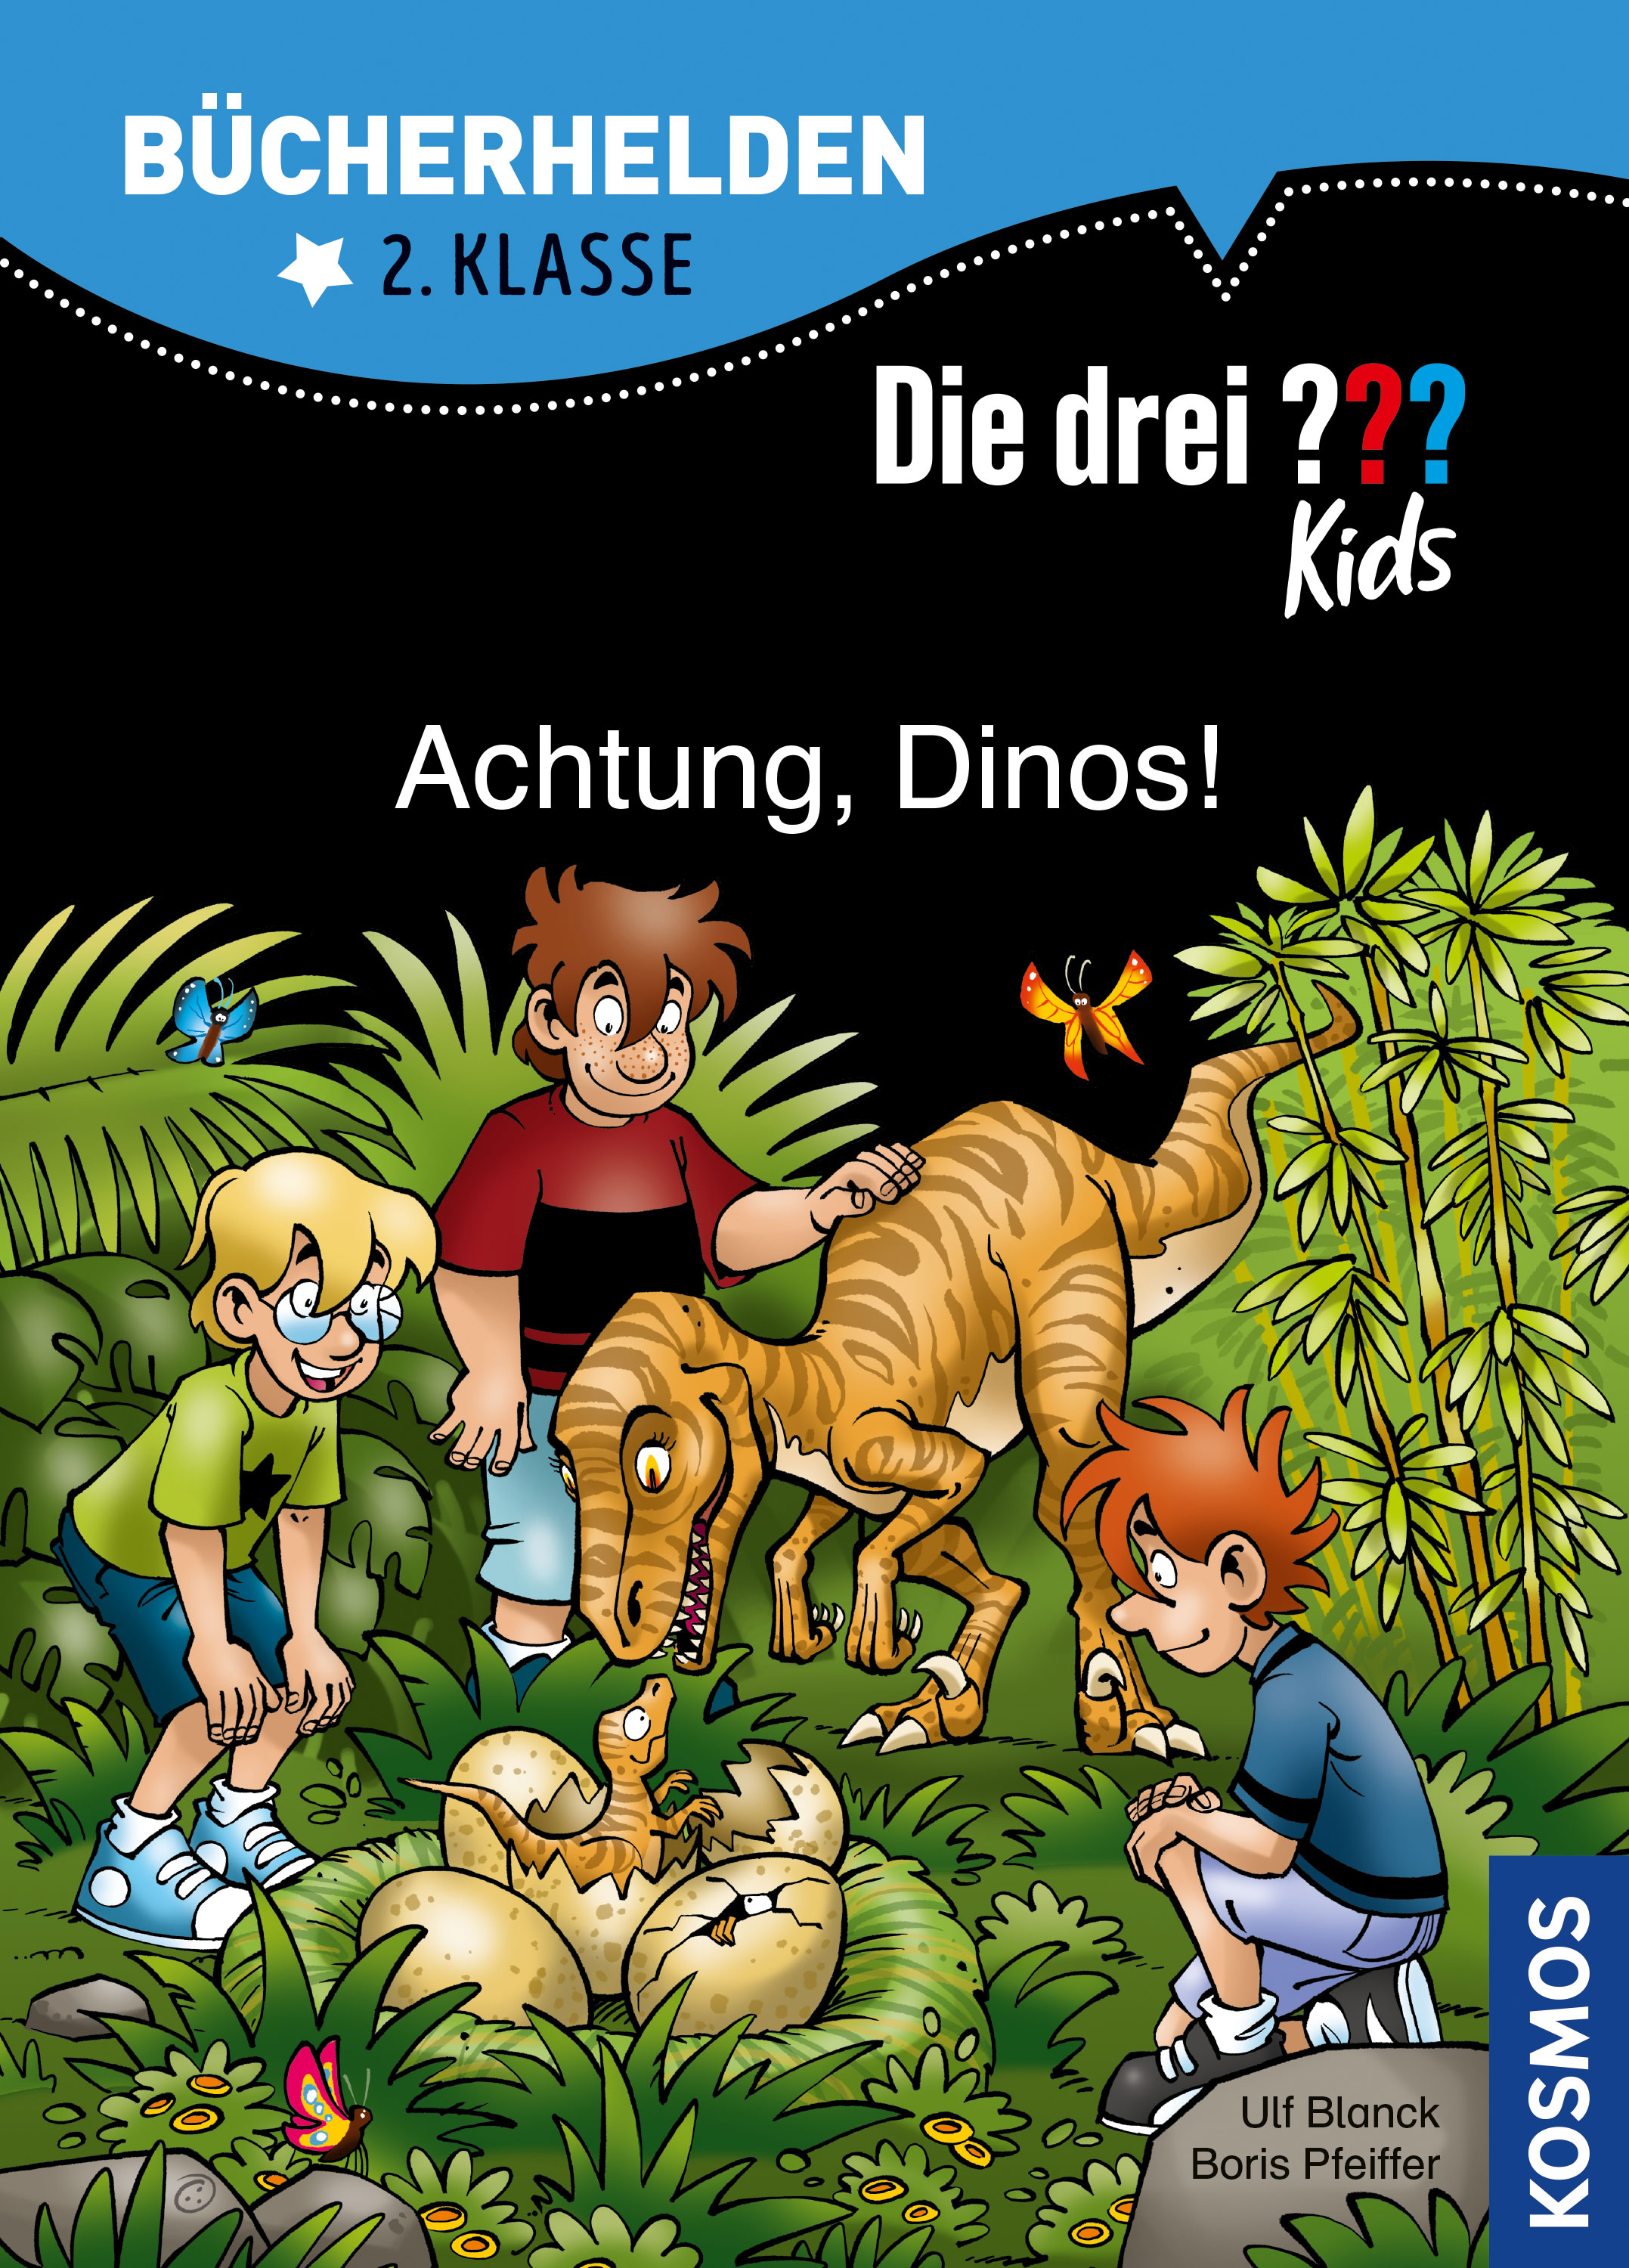 Die Drei ??? (Fragezeichen) Kids, Buch-Special: Achtung, Dinos! (Bücherhelden 2.Klasse) 